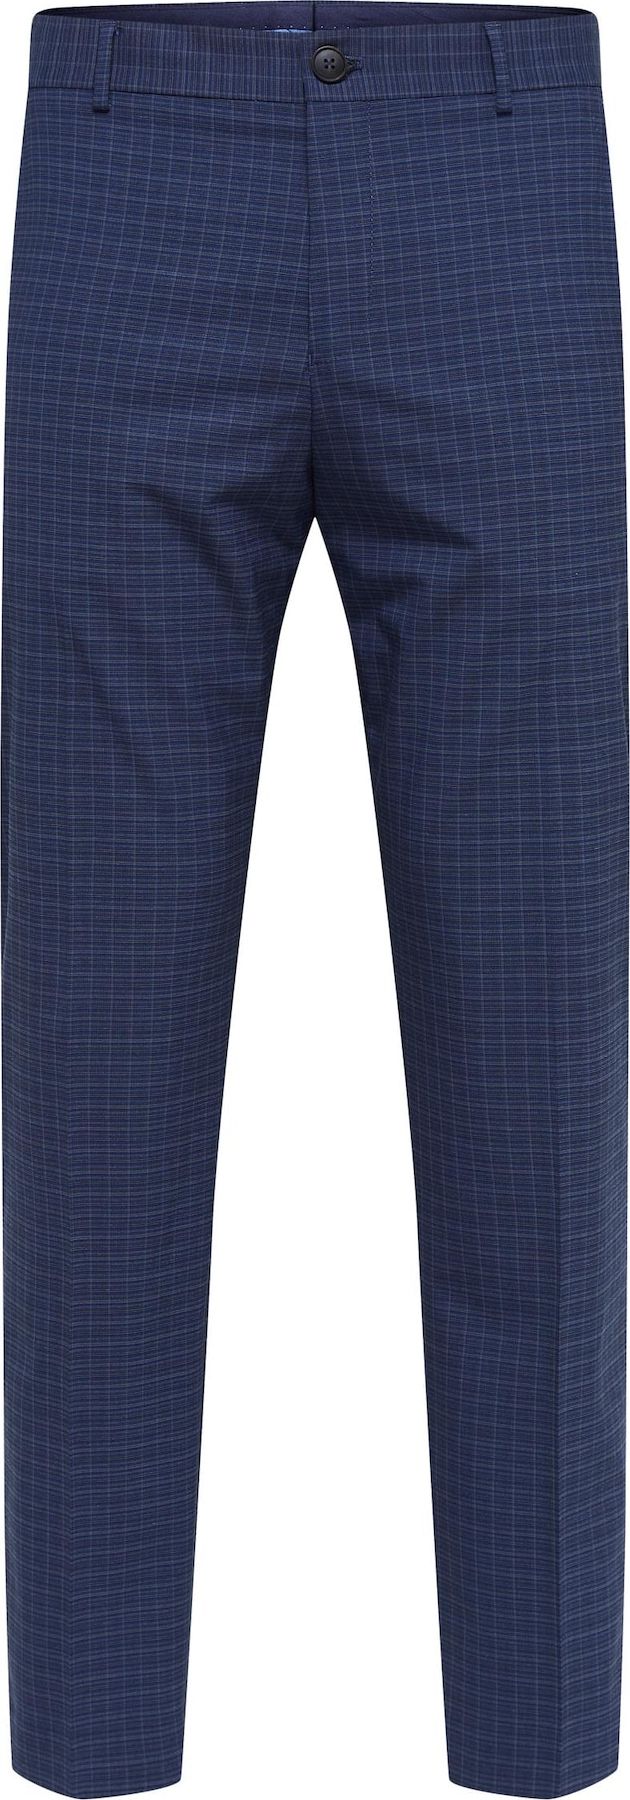 SELECTED HOMME Kalhoty s puky modrá / safírová